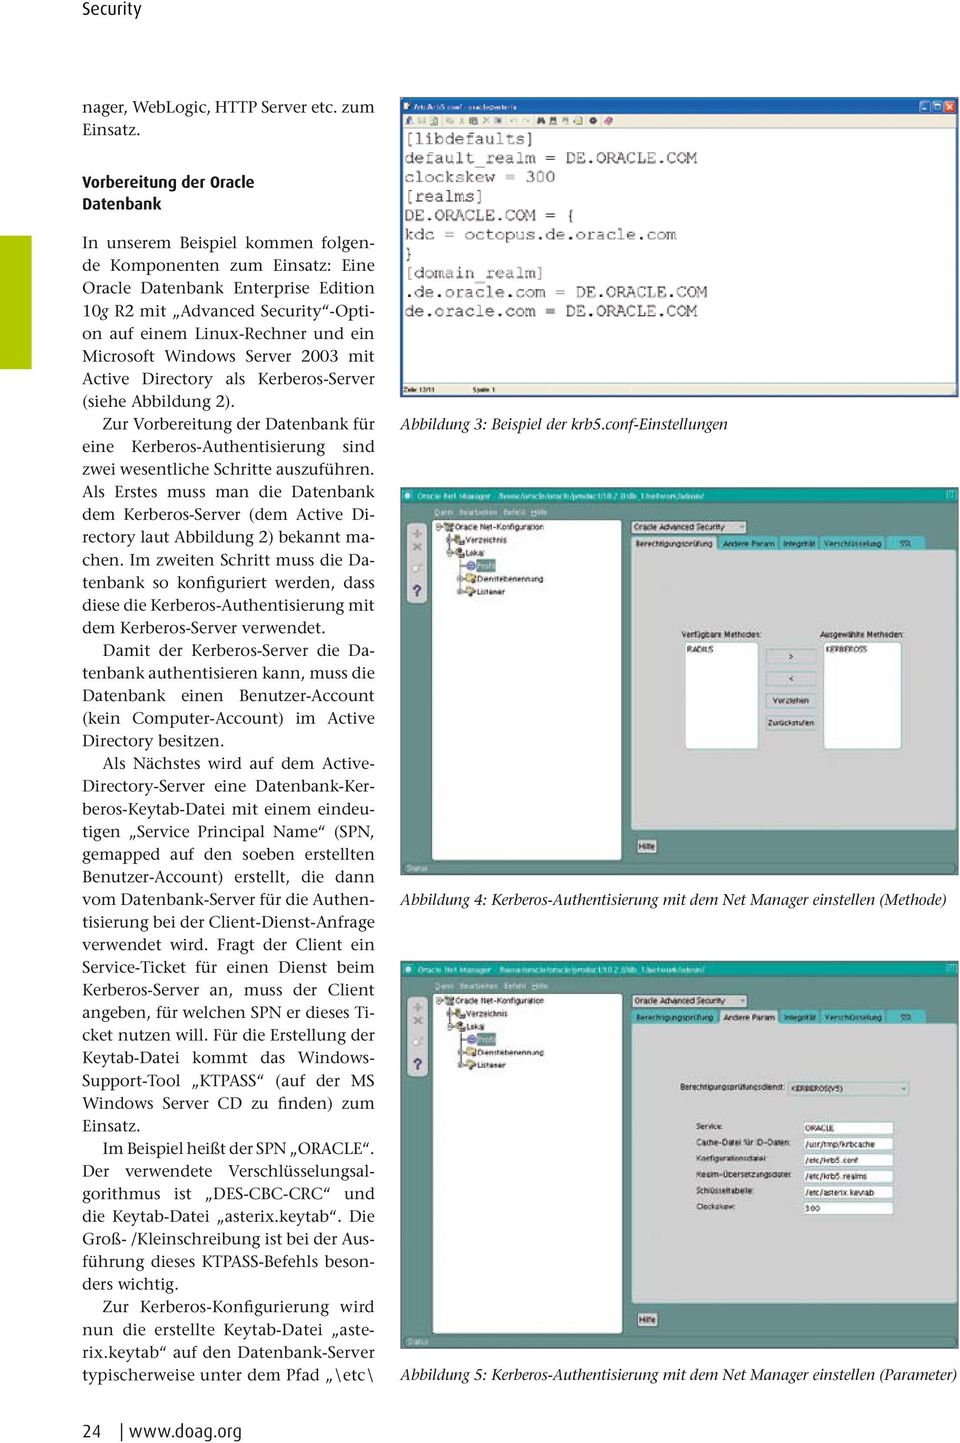 und ein Microsoft Windows Server 2003 mit Active Directory als Kerberos-Server (siehe Abbildung 2).